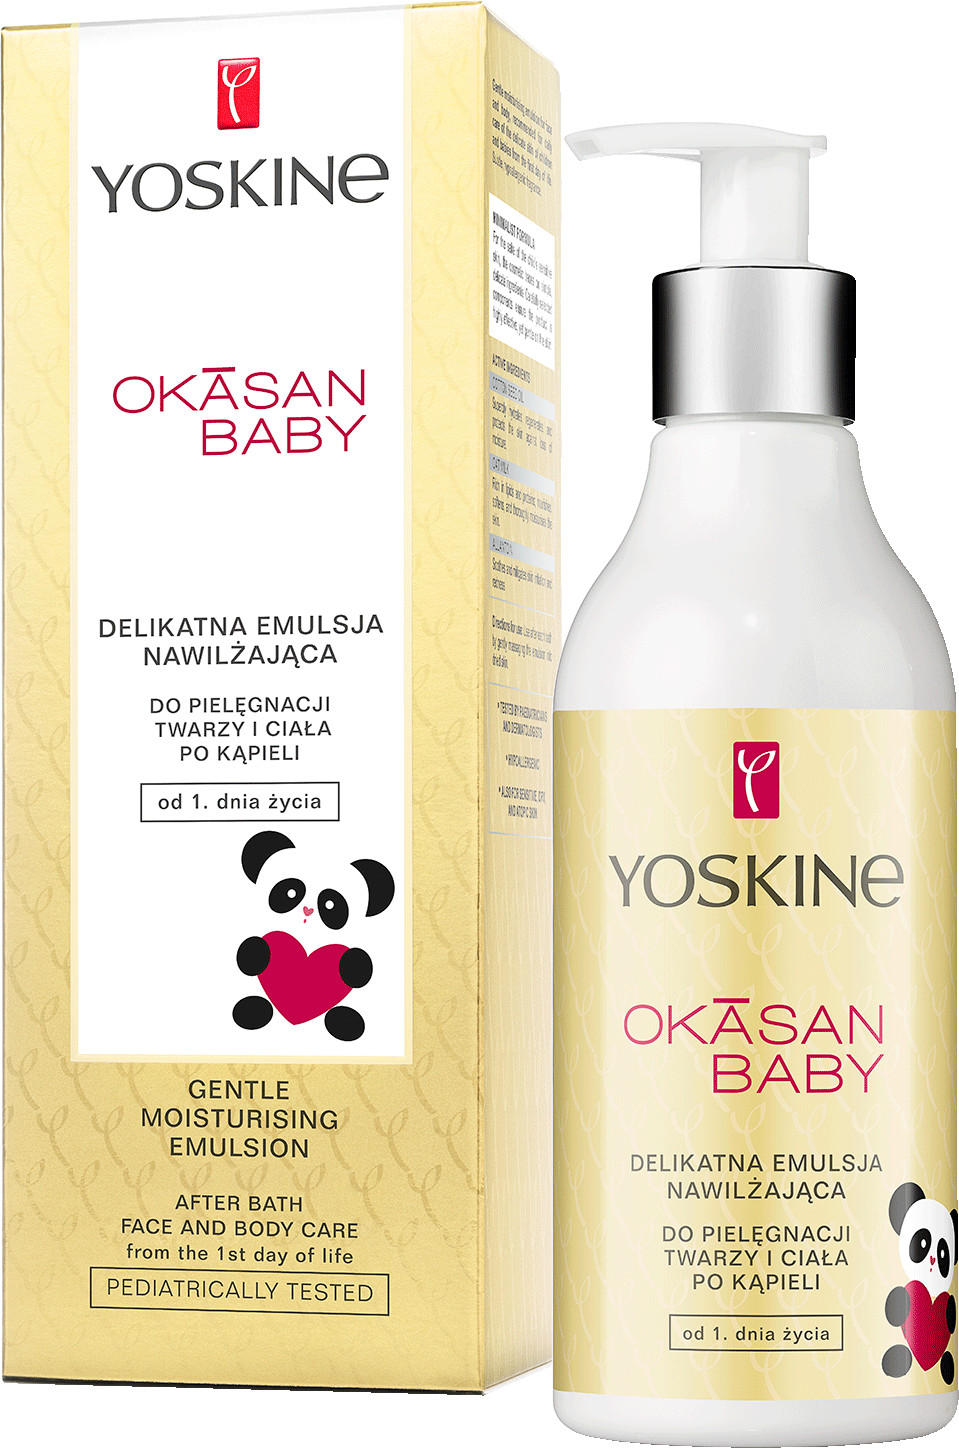 Yoskine Okasan Baby balsam nawilżający do ciała 240 ml